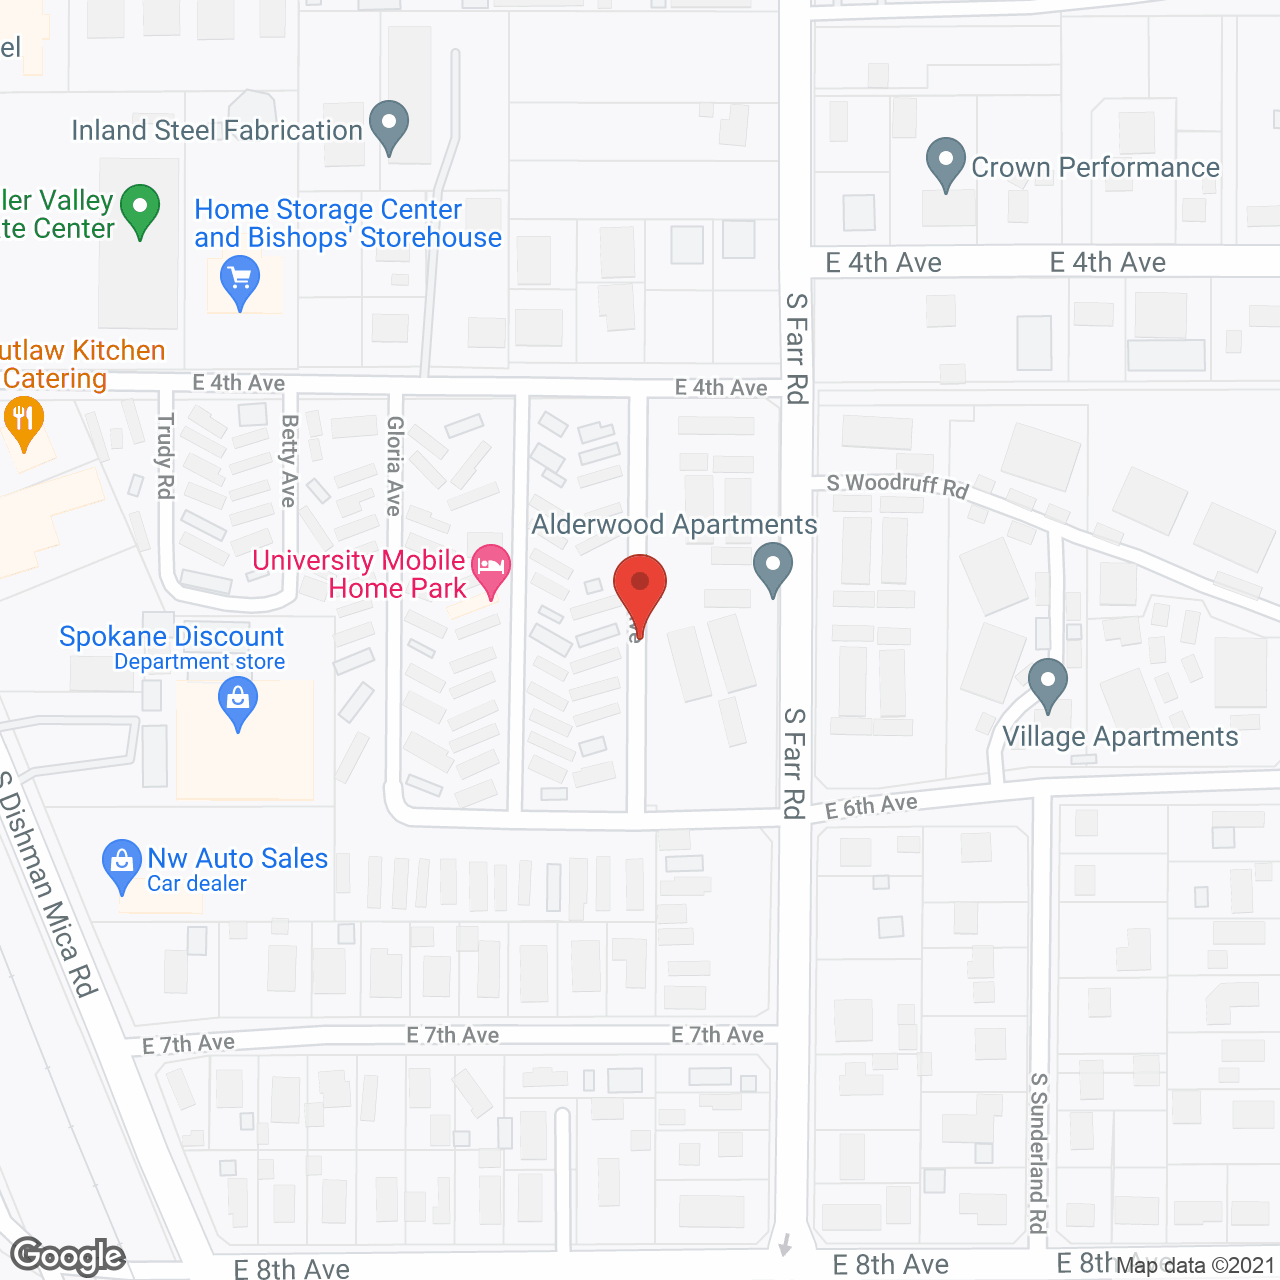 Revel Spokane in google map